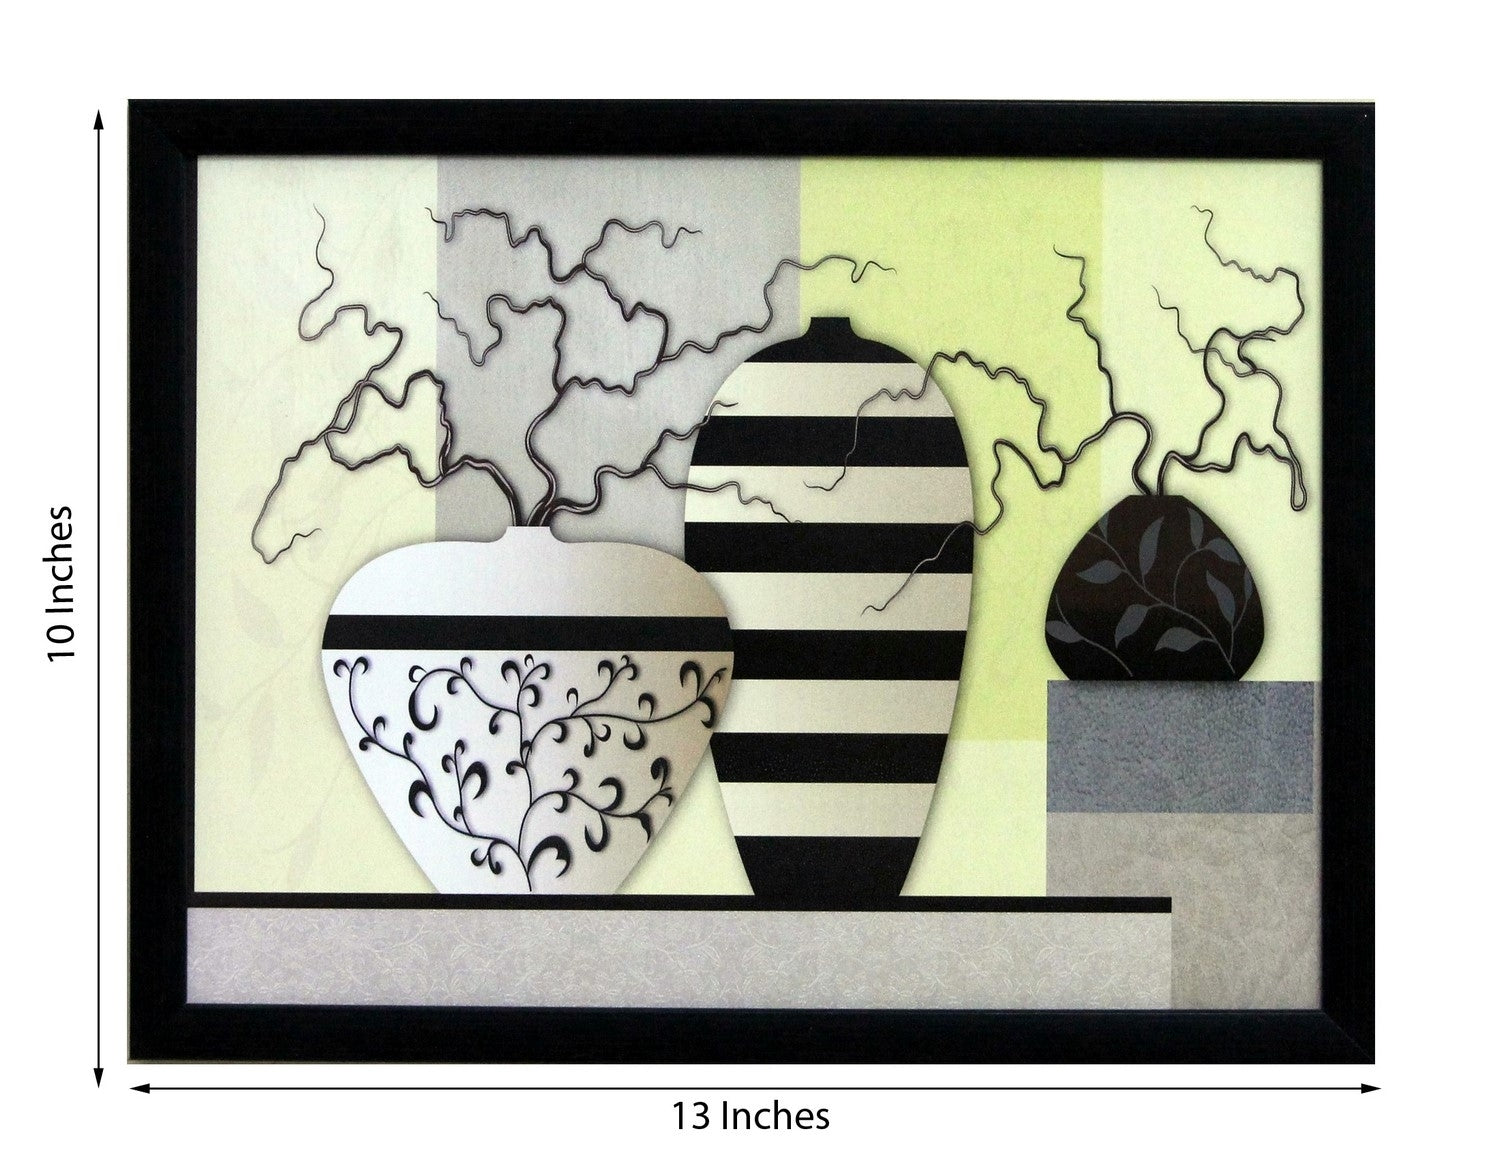 Abstract Pots Theme Satin Matt Texture UV Art Painting 2